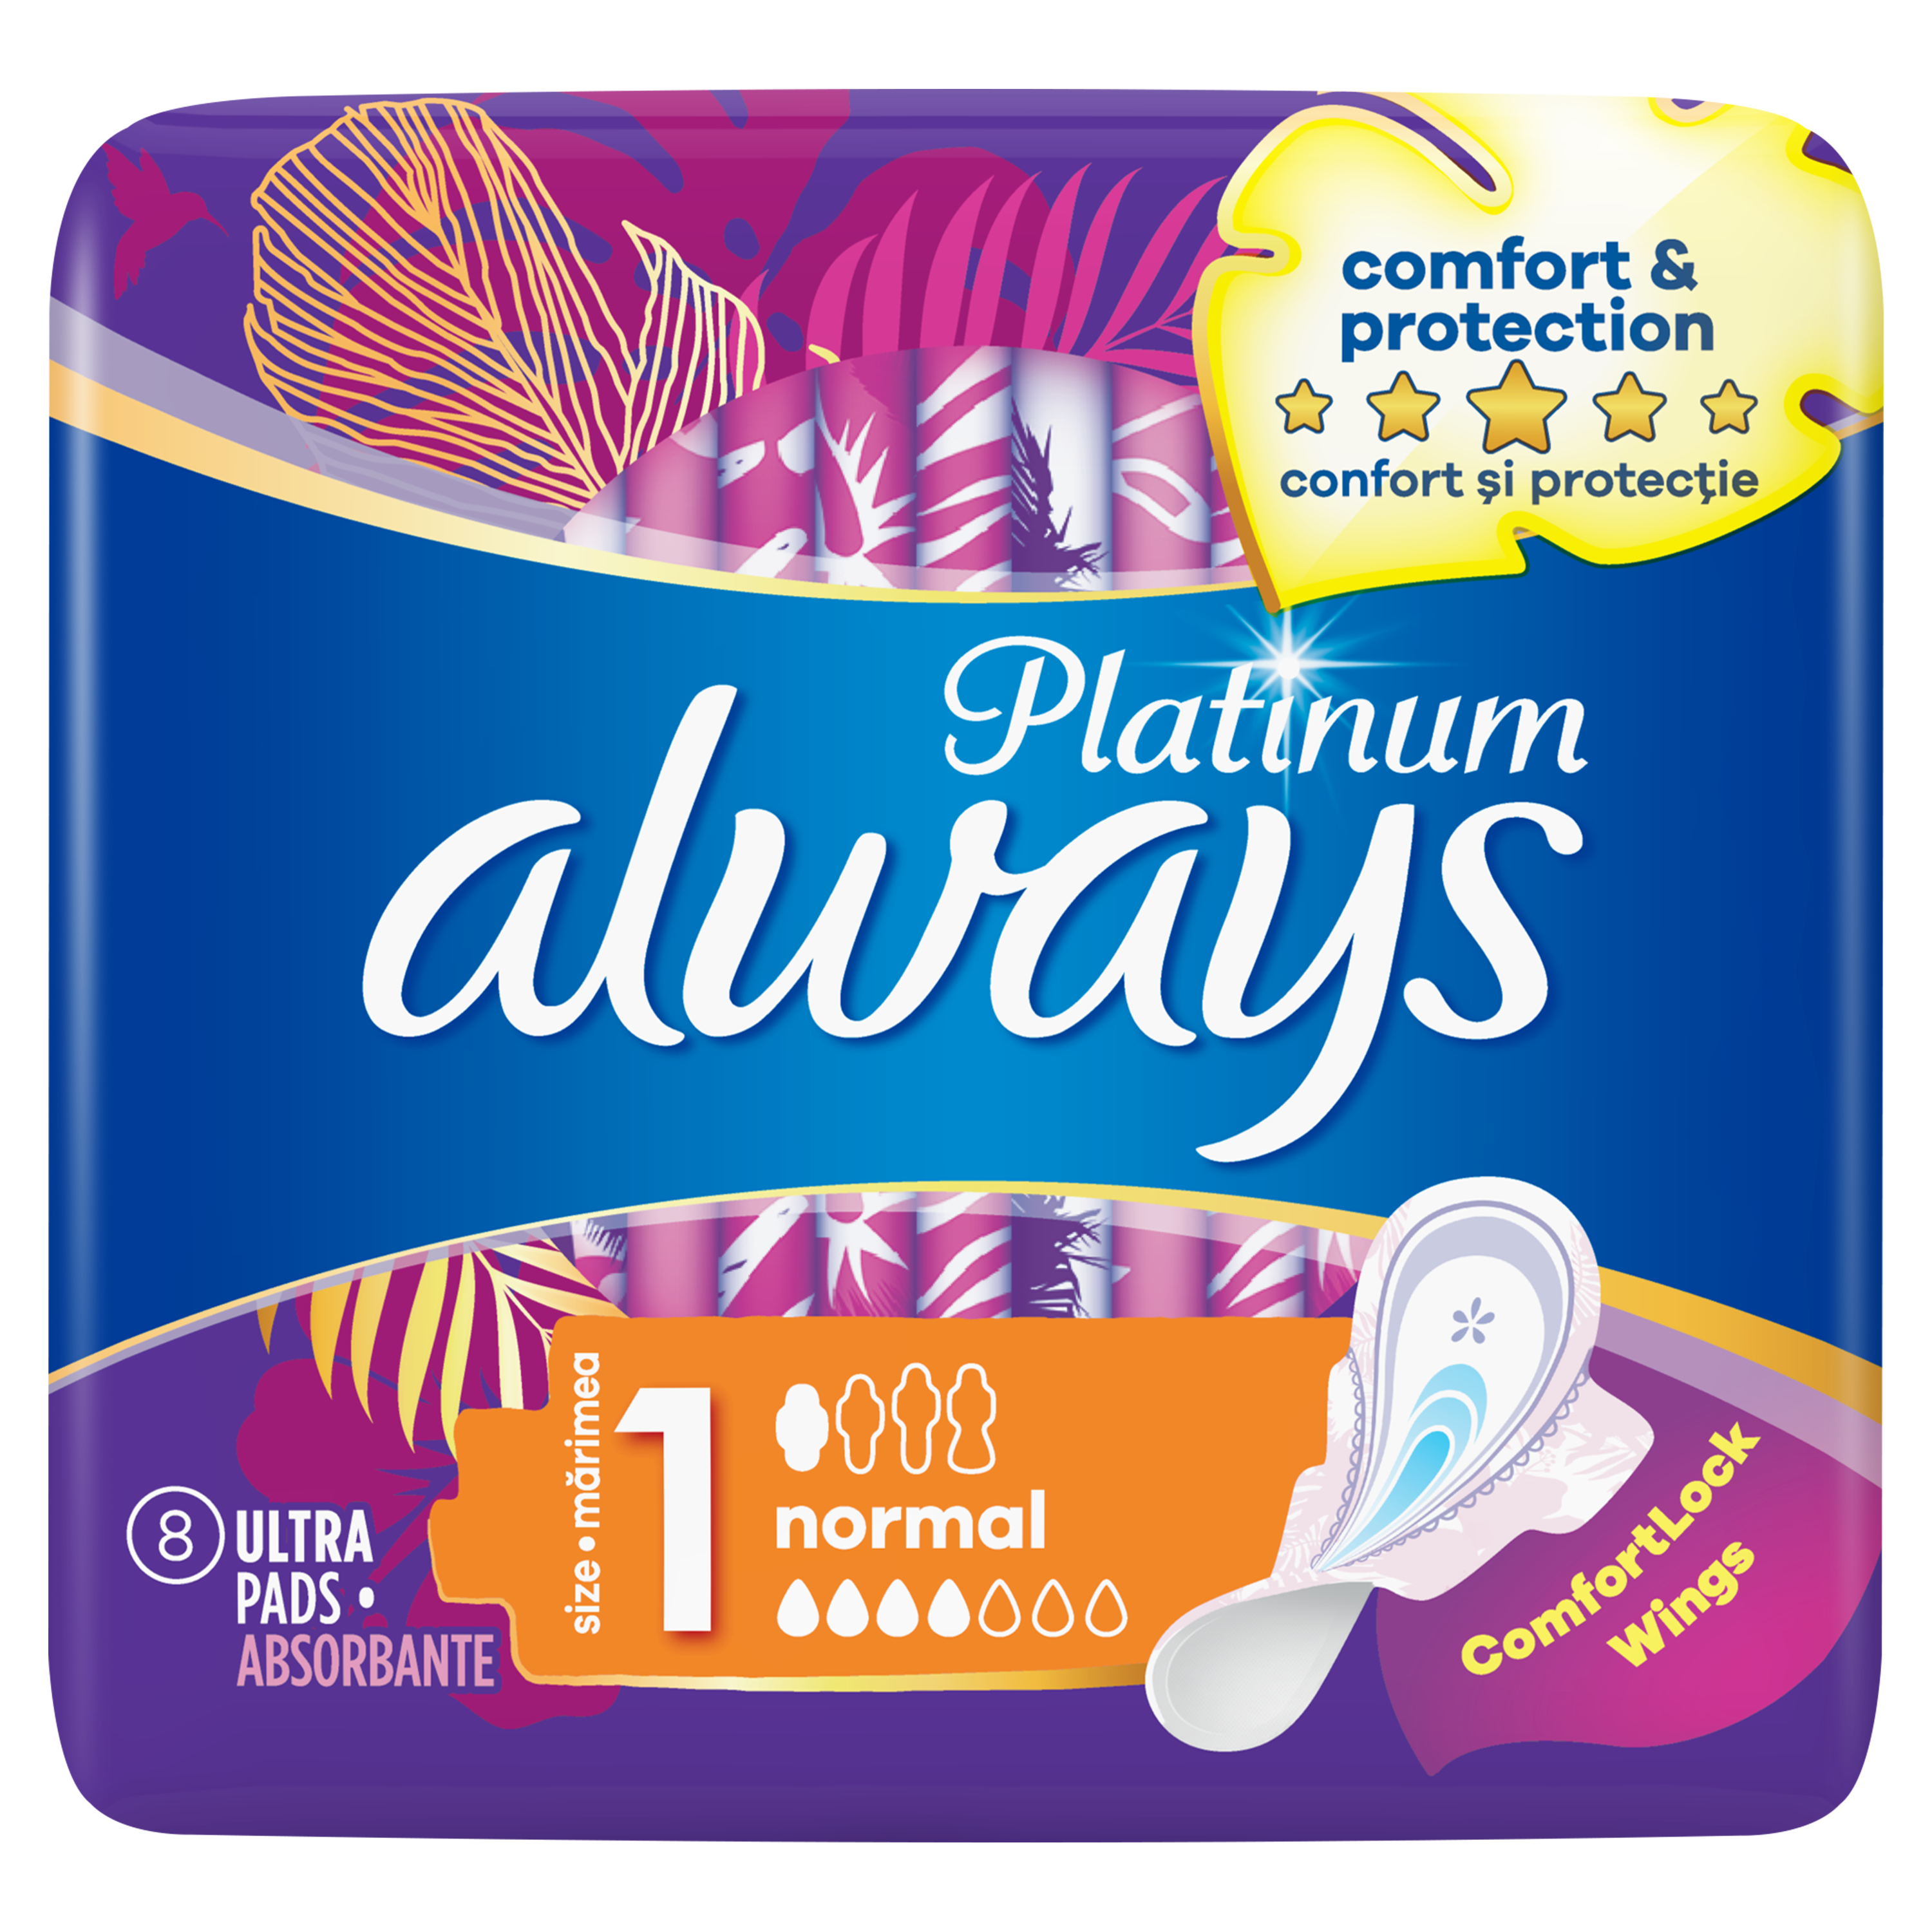   Always Platinum Normal  (Velikost 1) Hygienické Vložky S Křidélky 8 ks